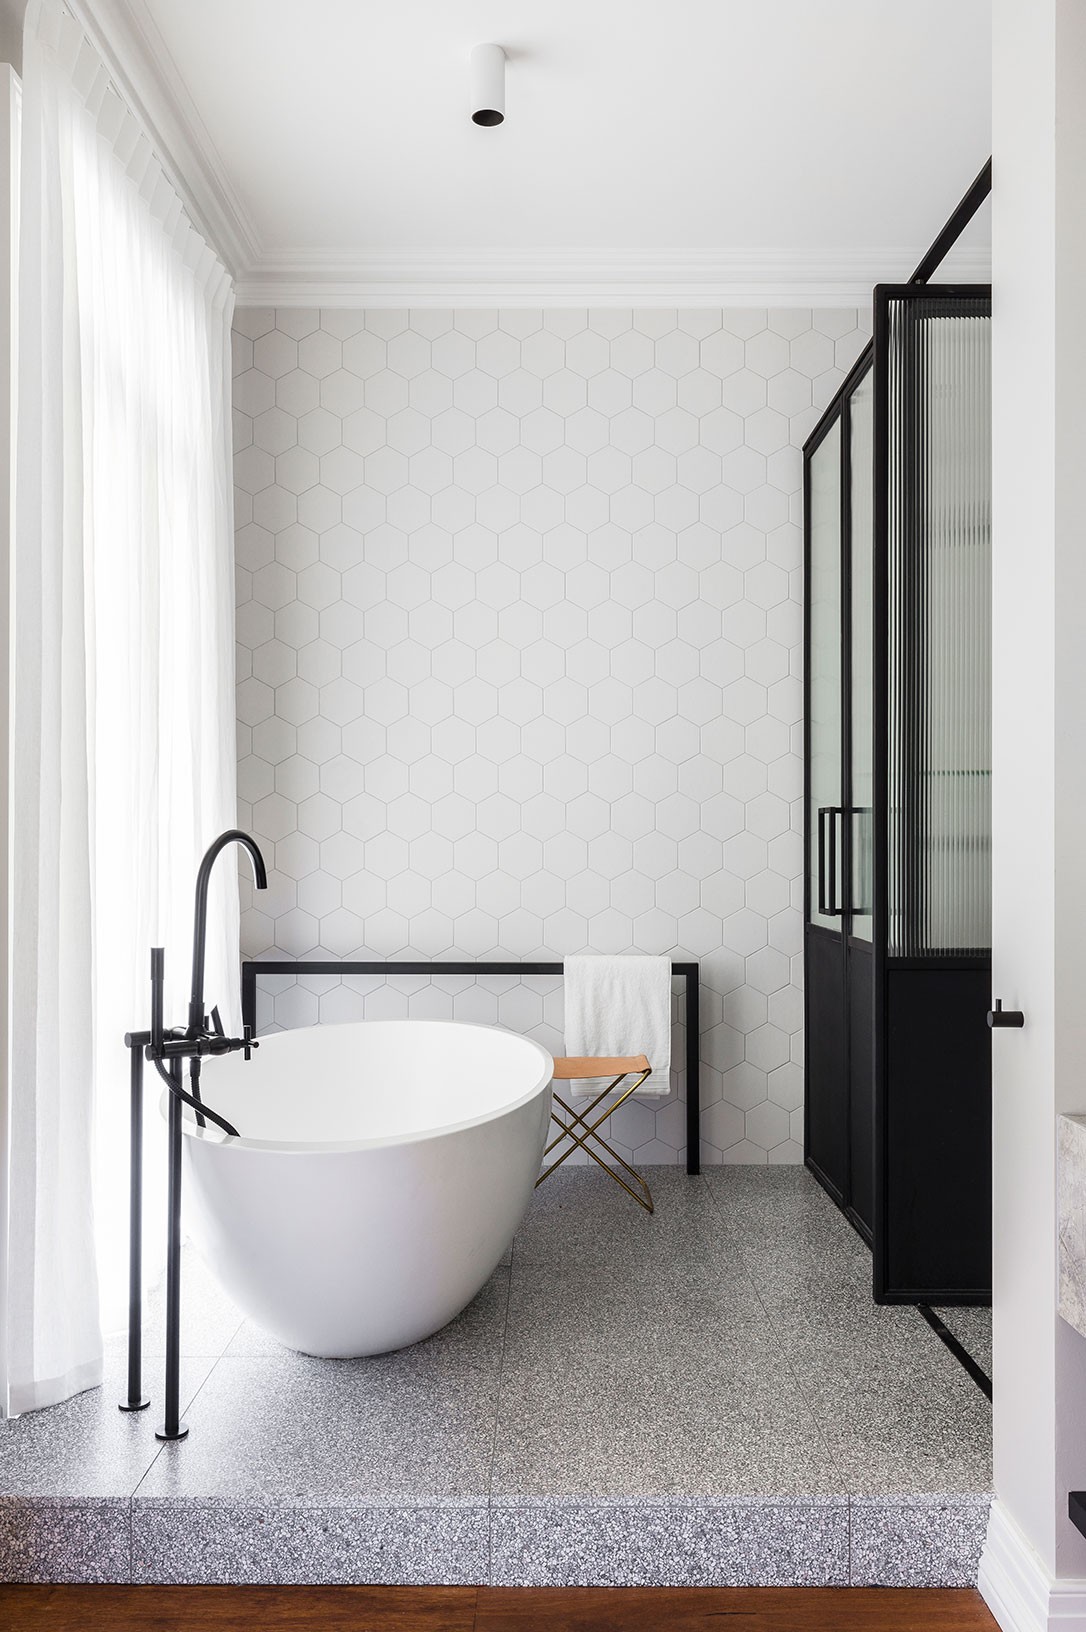 Décor do dia: banheiro minimalista com azulejos hexagonais (Foto: Reprodução)